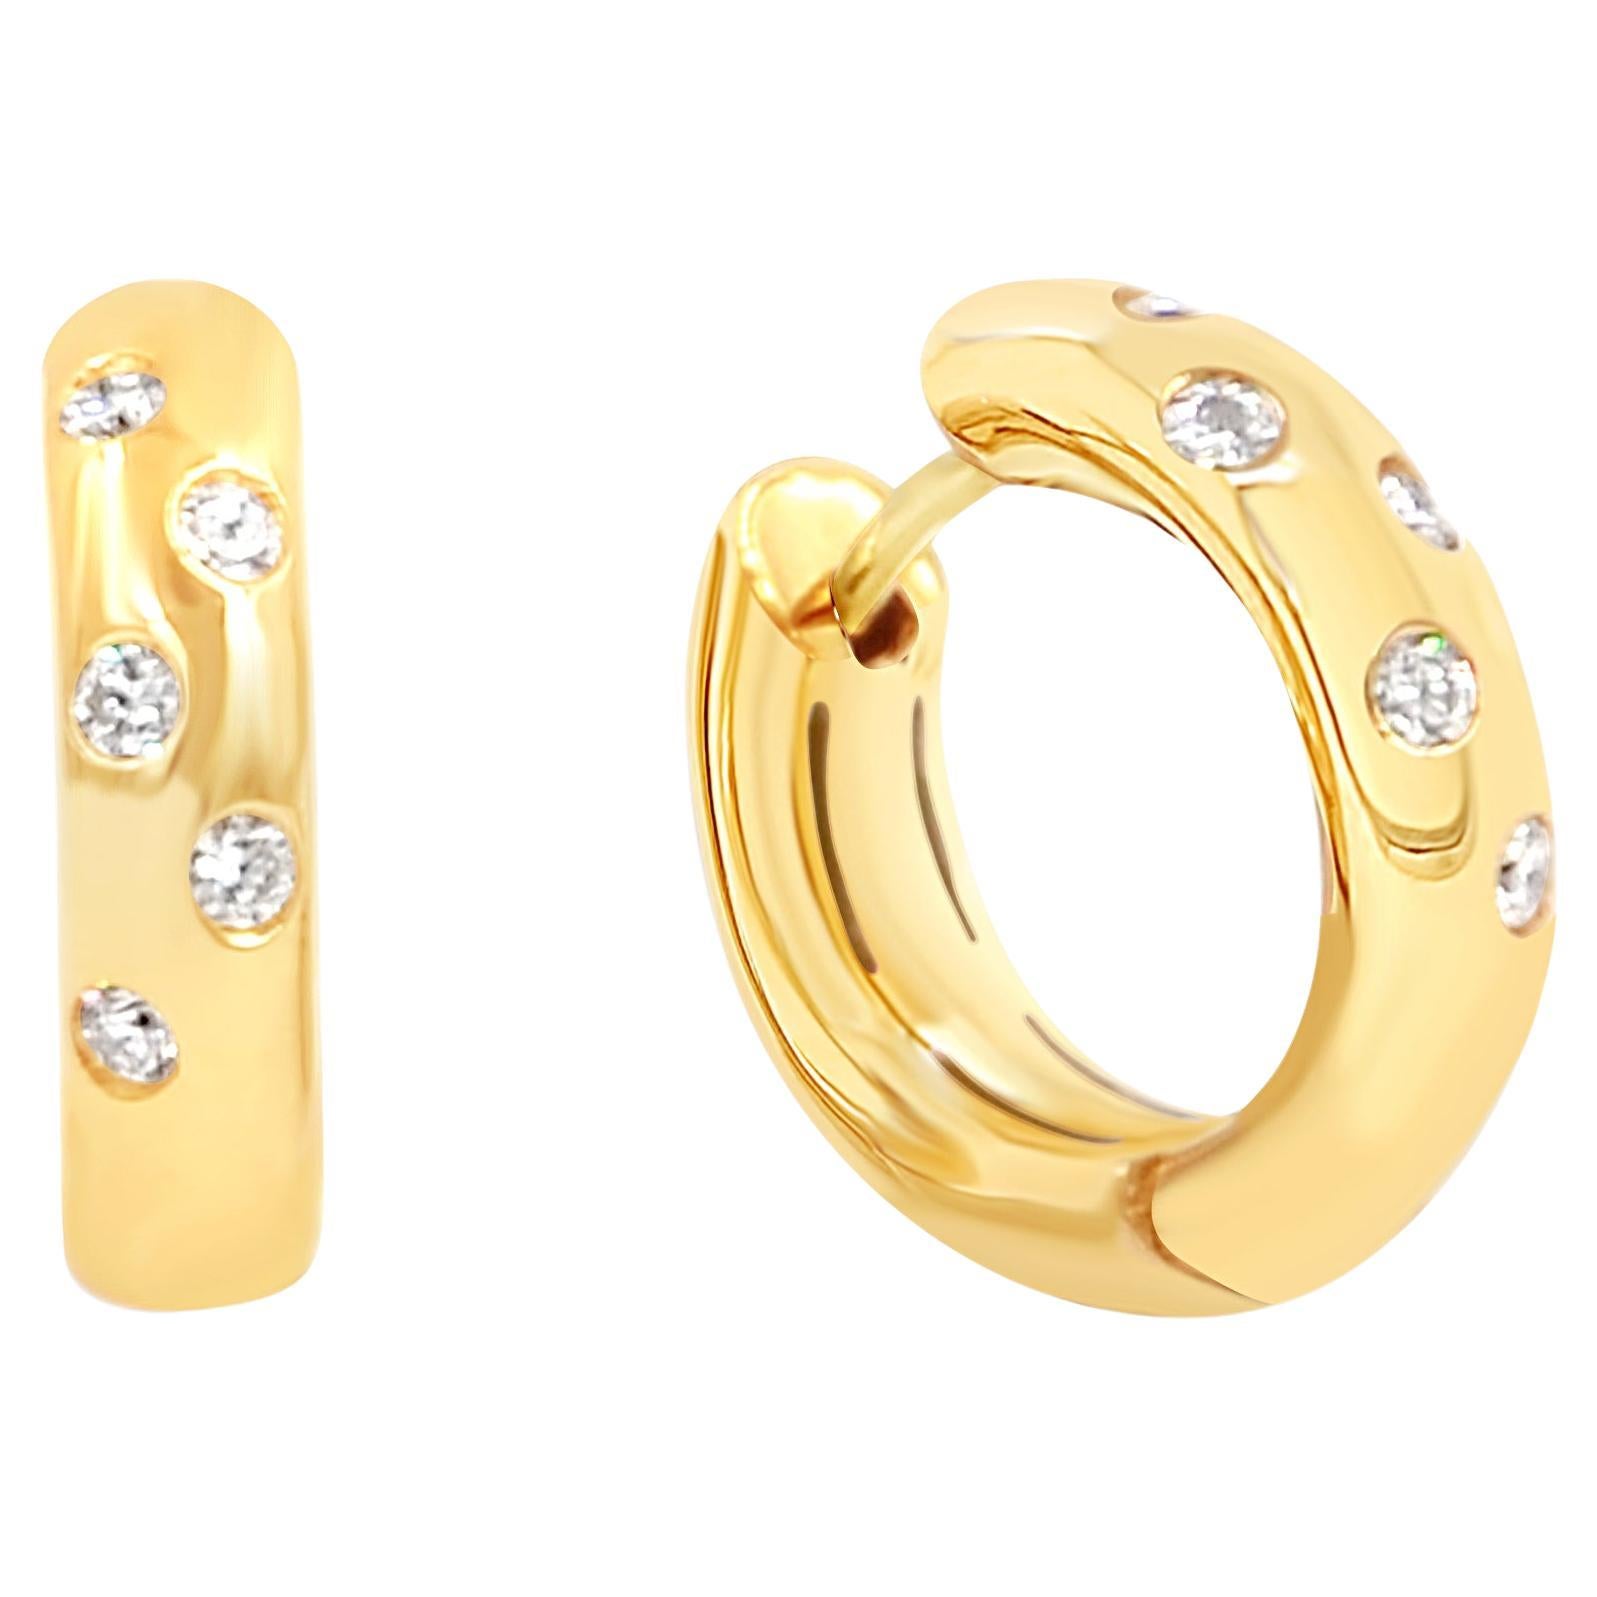 18 Karat Yellow Gold White Diamonds Garavelli Round Huggie Earrings